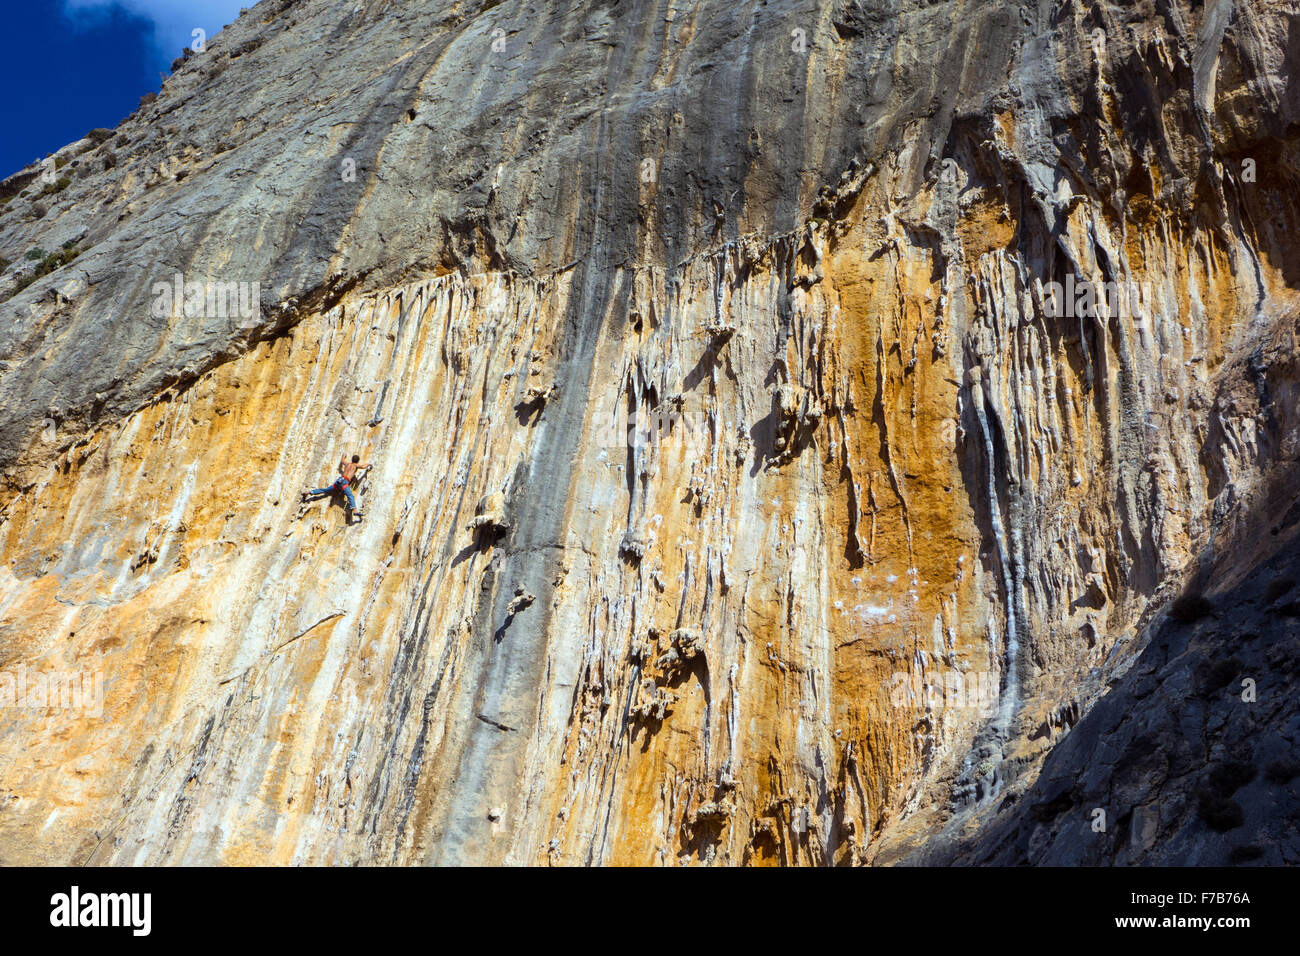 Escalade sur falaise ensoleillée, l'escalade sportive, Grèce Banque D'Images